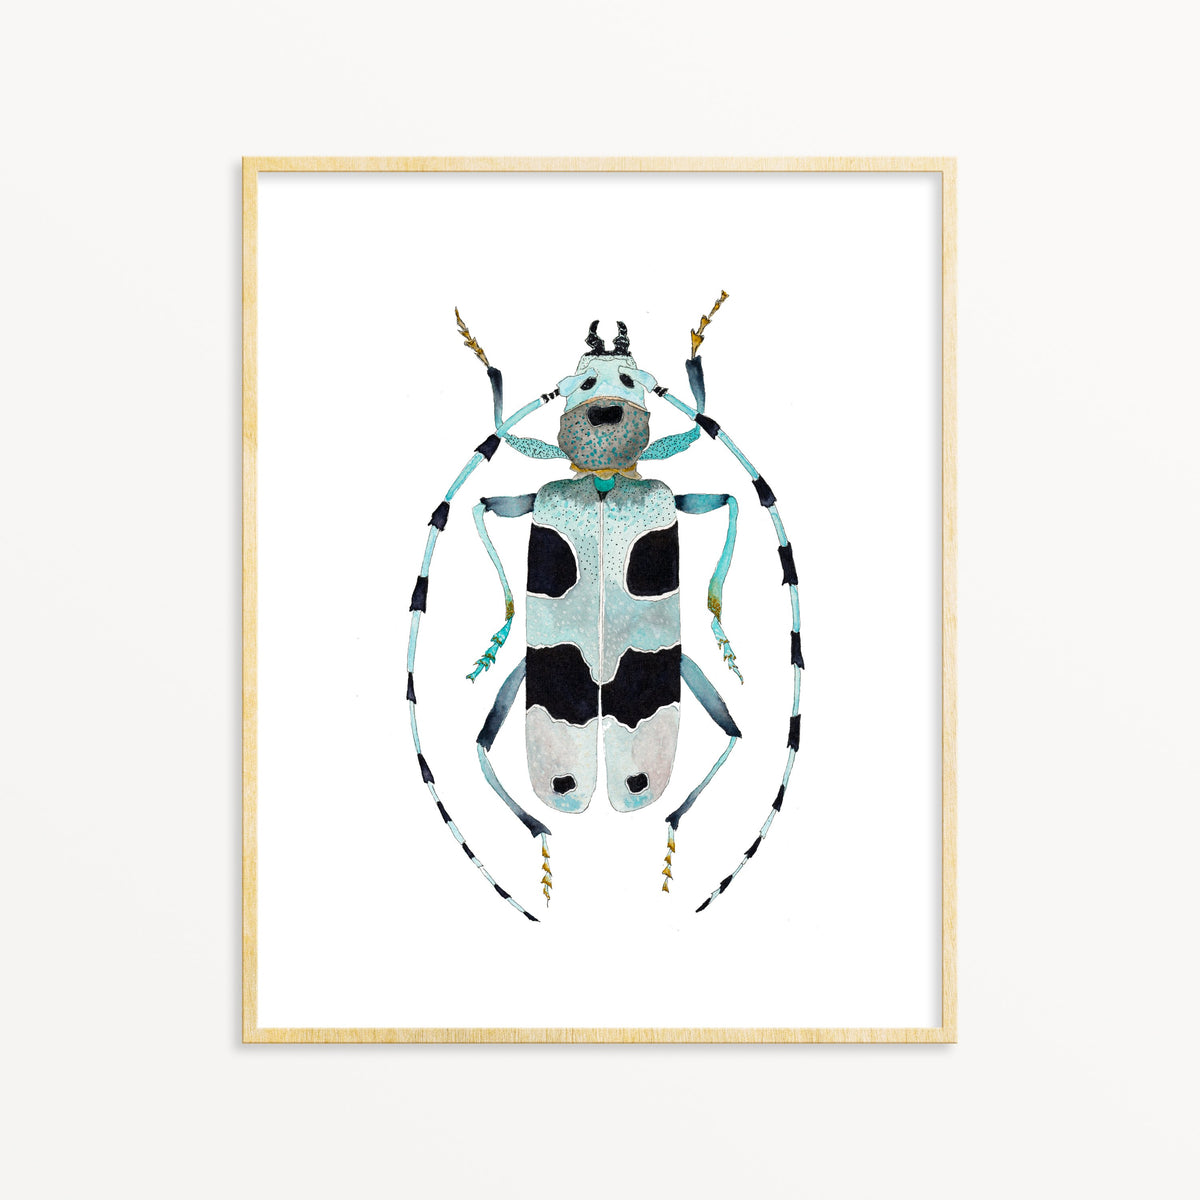 Beetle No. 5